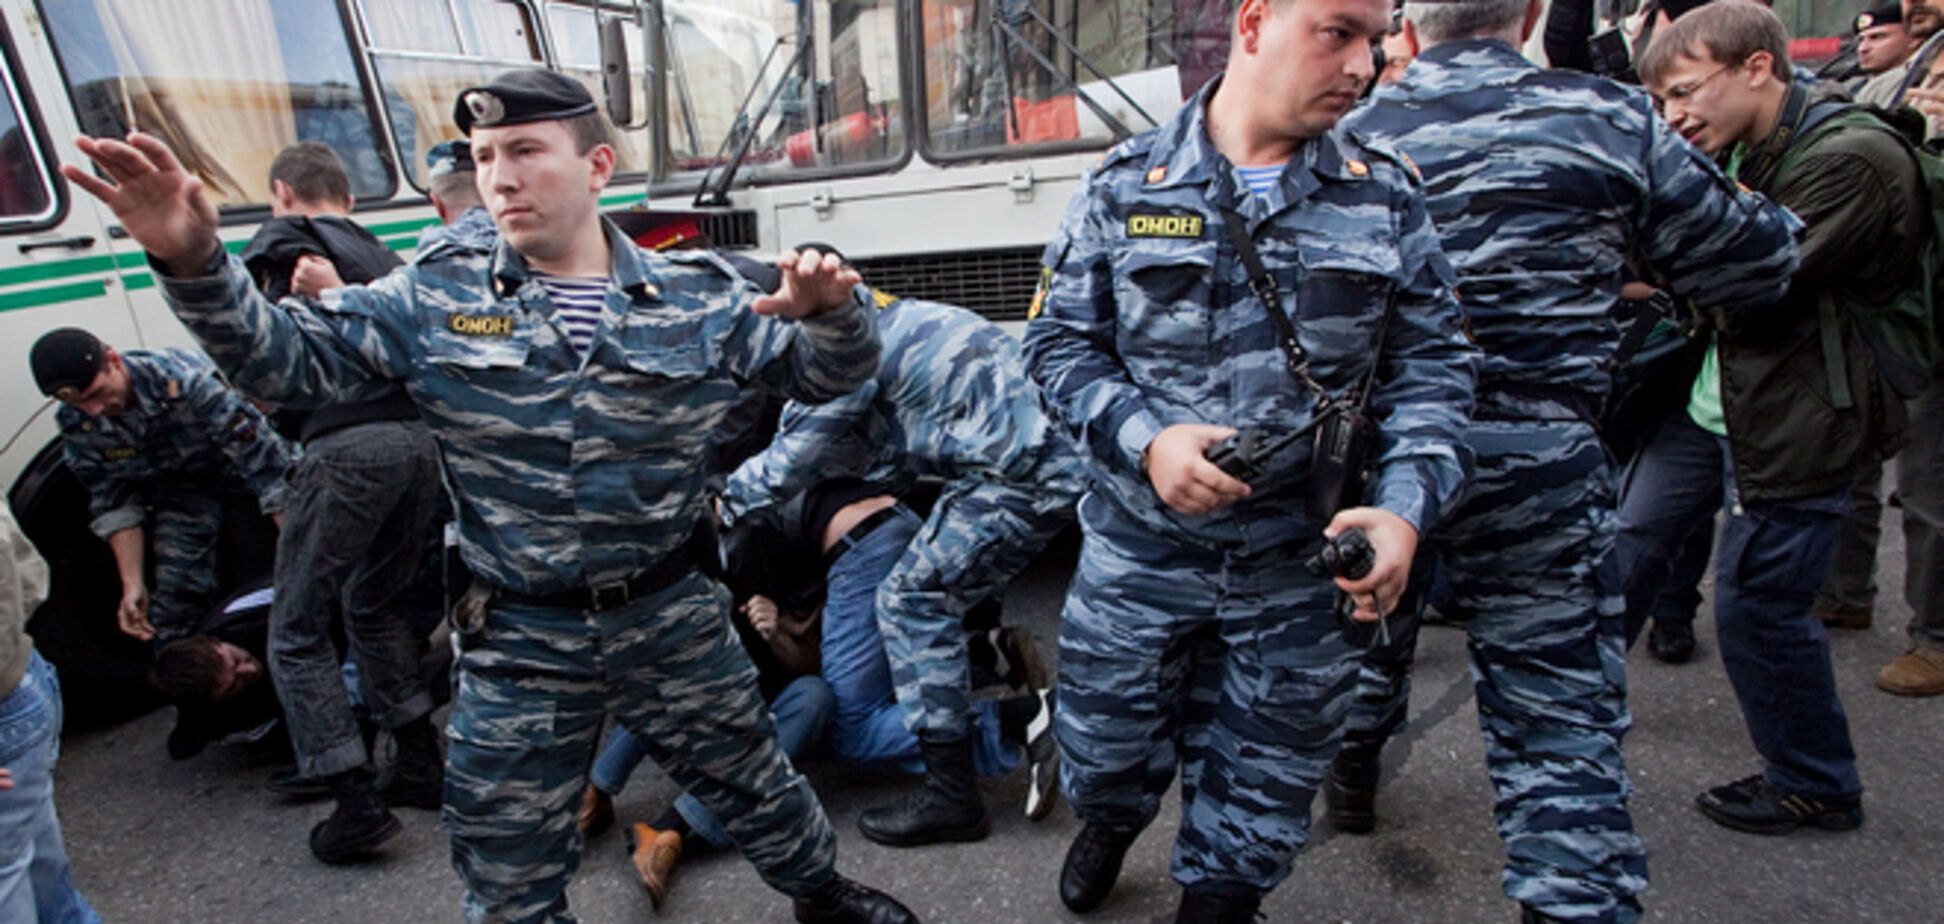 Ужасы нашего городка: в Москве весь ОМОН сгонят на одну территорию